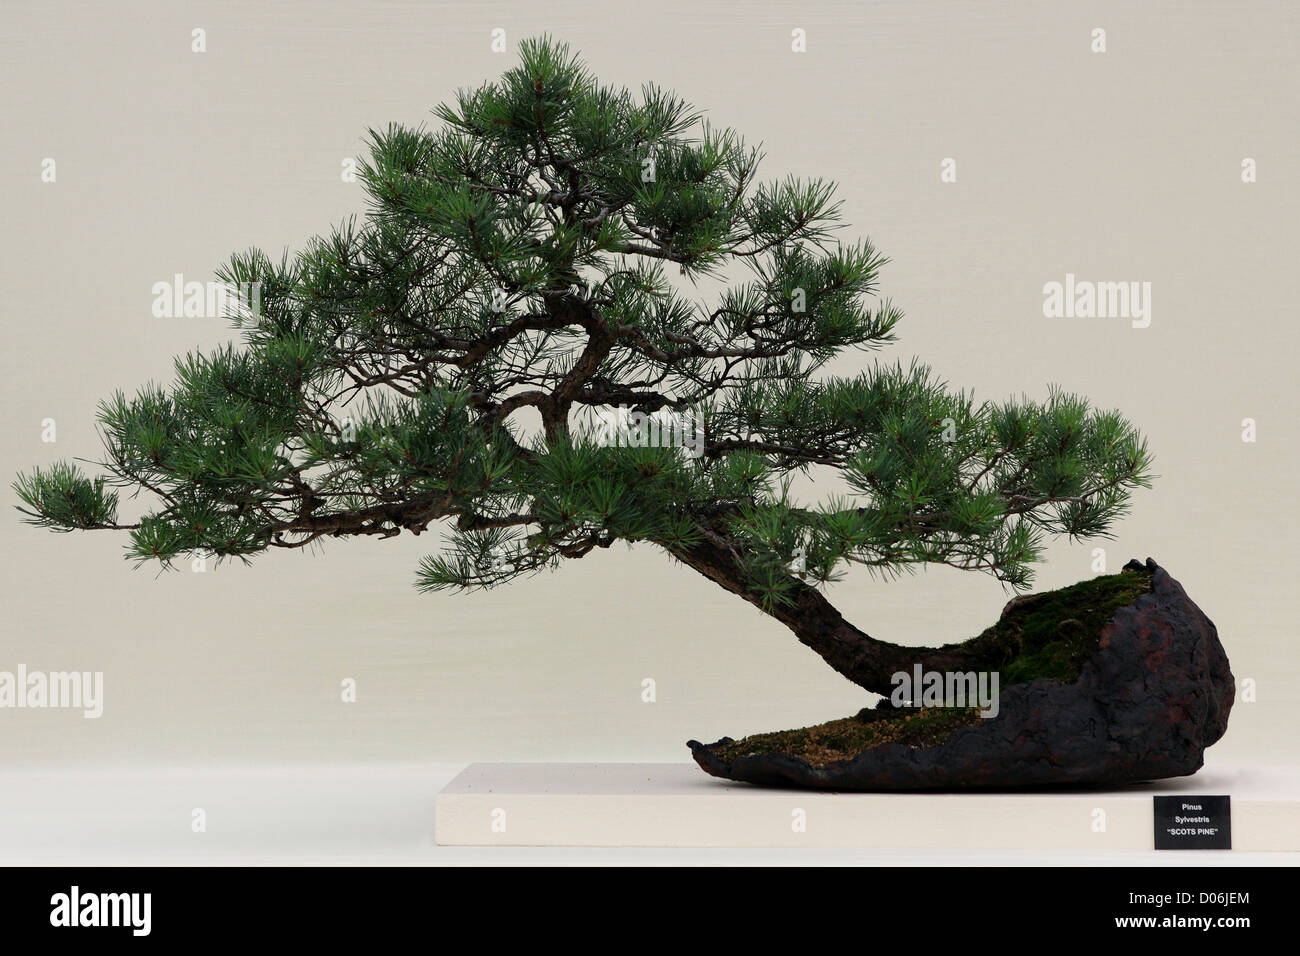 Delicato di pino silvestre Bonsai Tree (Pinus sylvestris) impostata su uno sfondo luminoso. Foto Stock